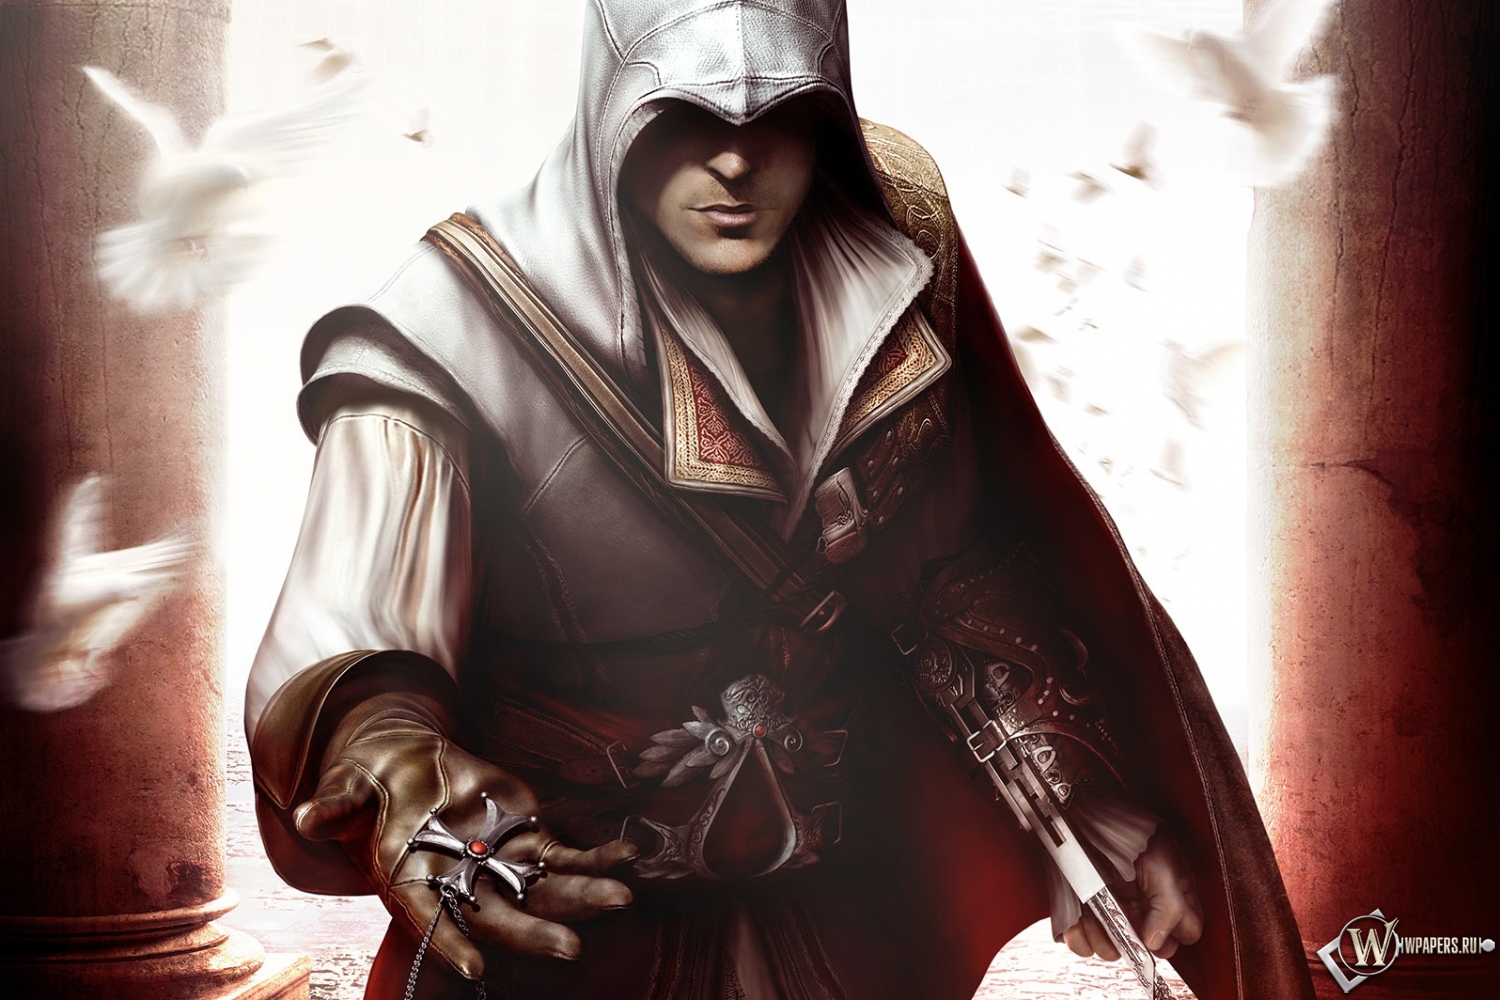 Скачать обои Assassins Creed 2 с разрешением 1500х1000 (25:16) .